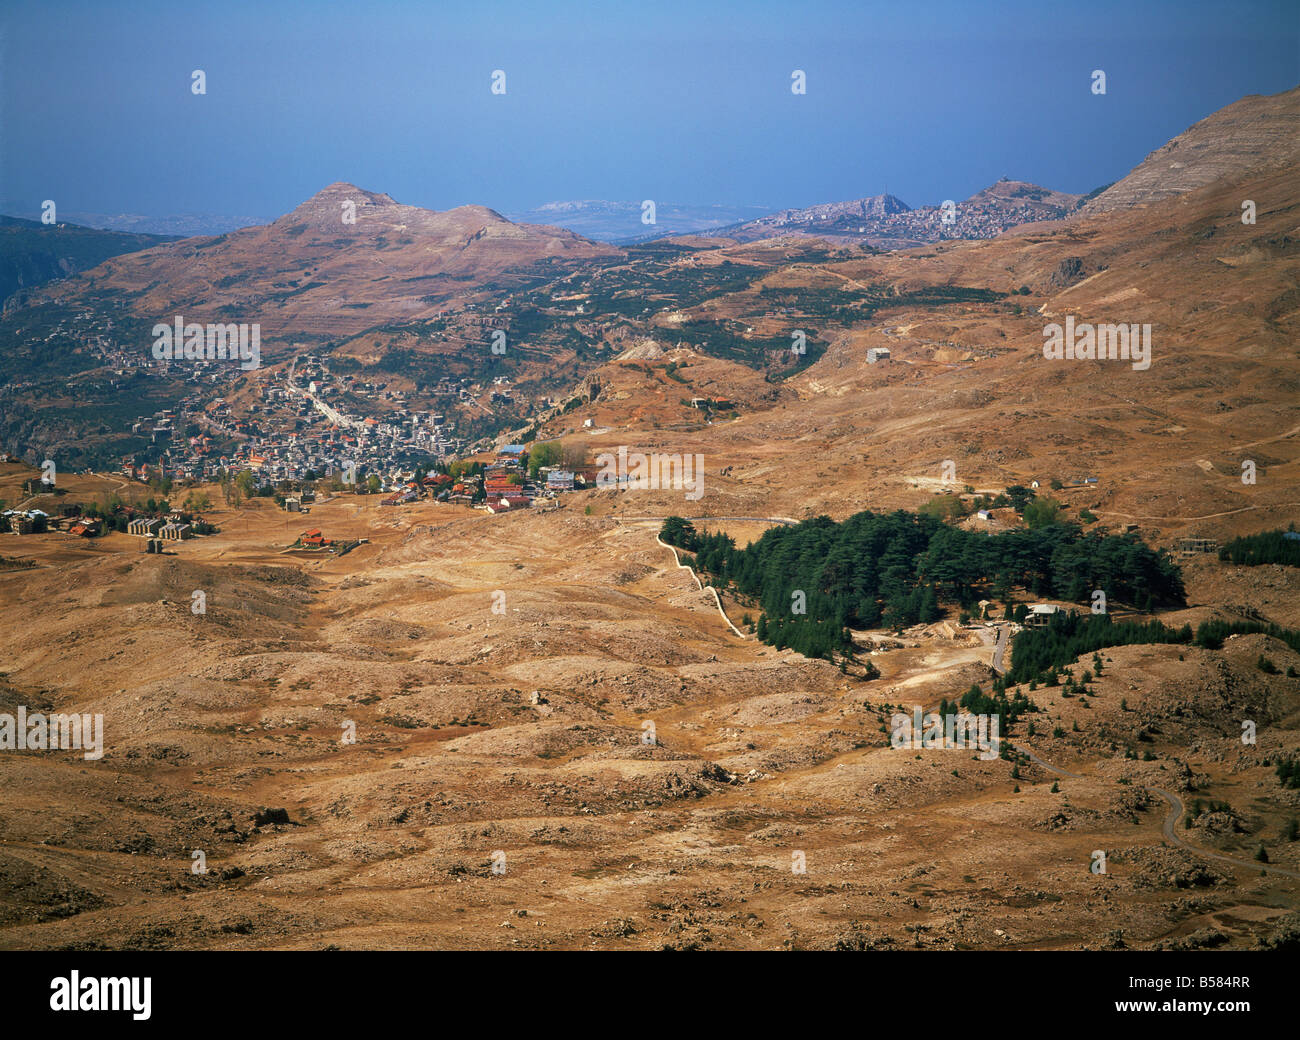 L'ultimo residuo di cedri, Qadisha valle (Ouadi Qadisha) (Valle Santa), il Sito Patrimonio Mondiale dell'UNESCO, Libano, Medio Oriente Foto Stock